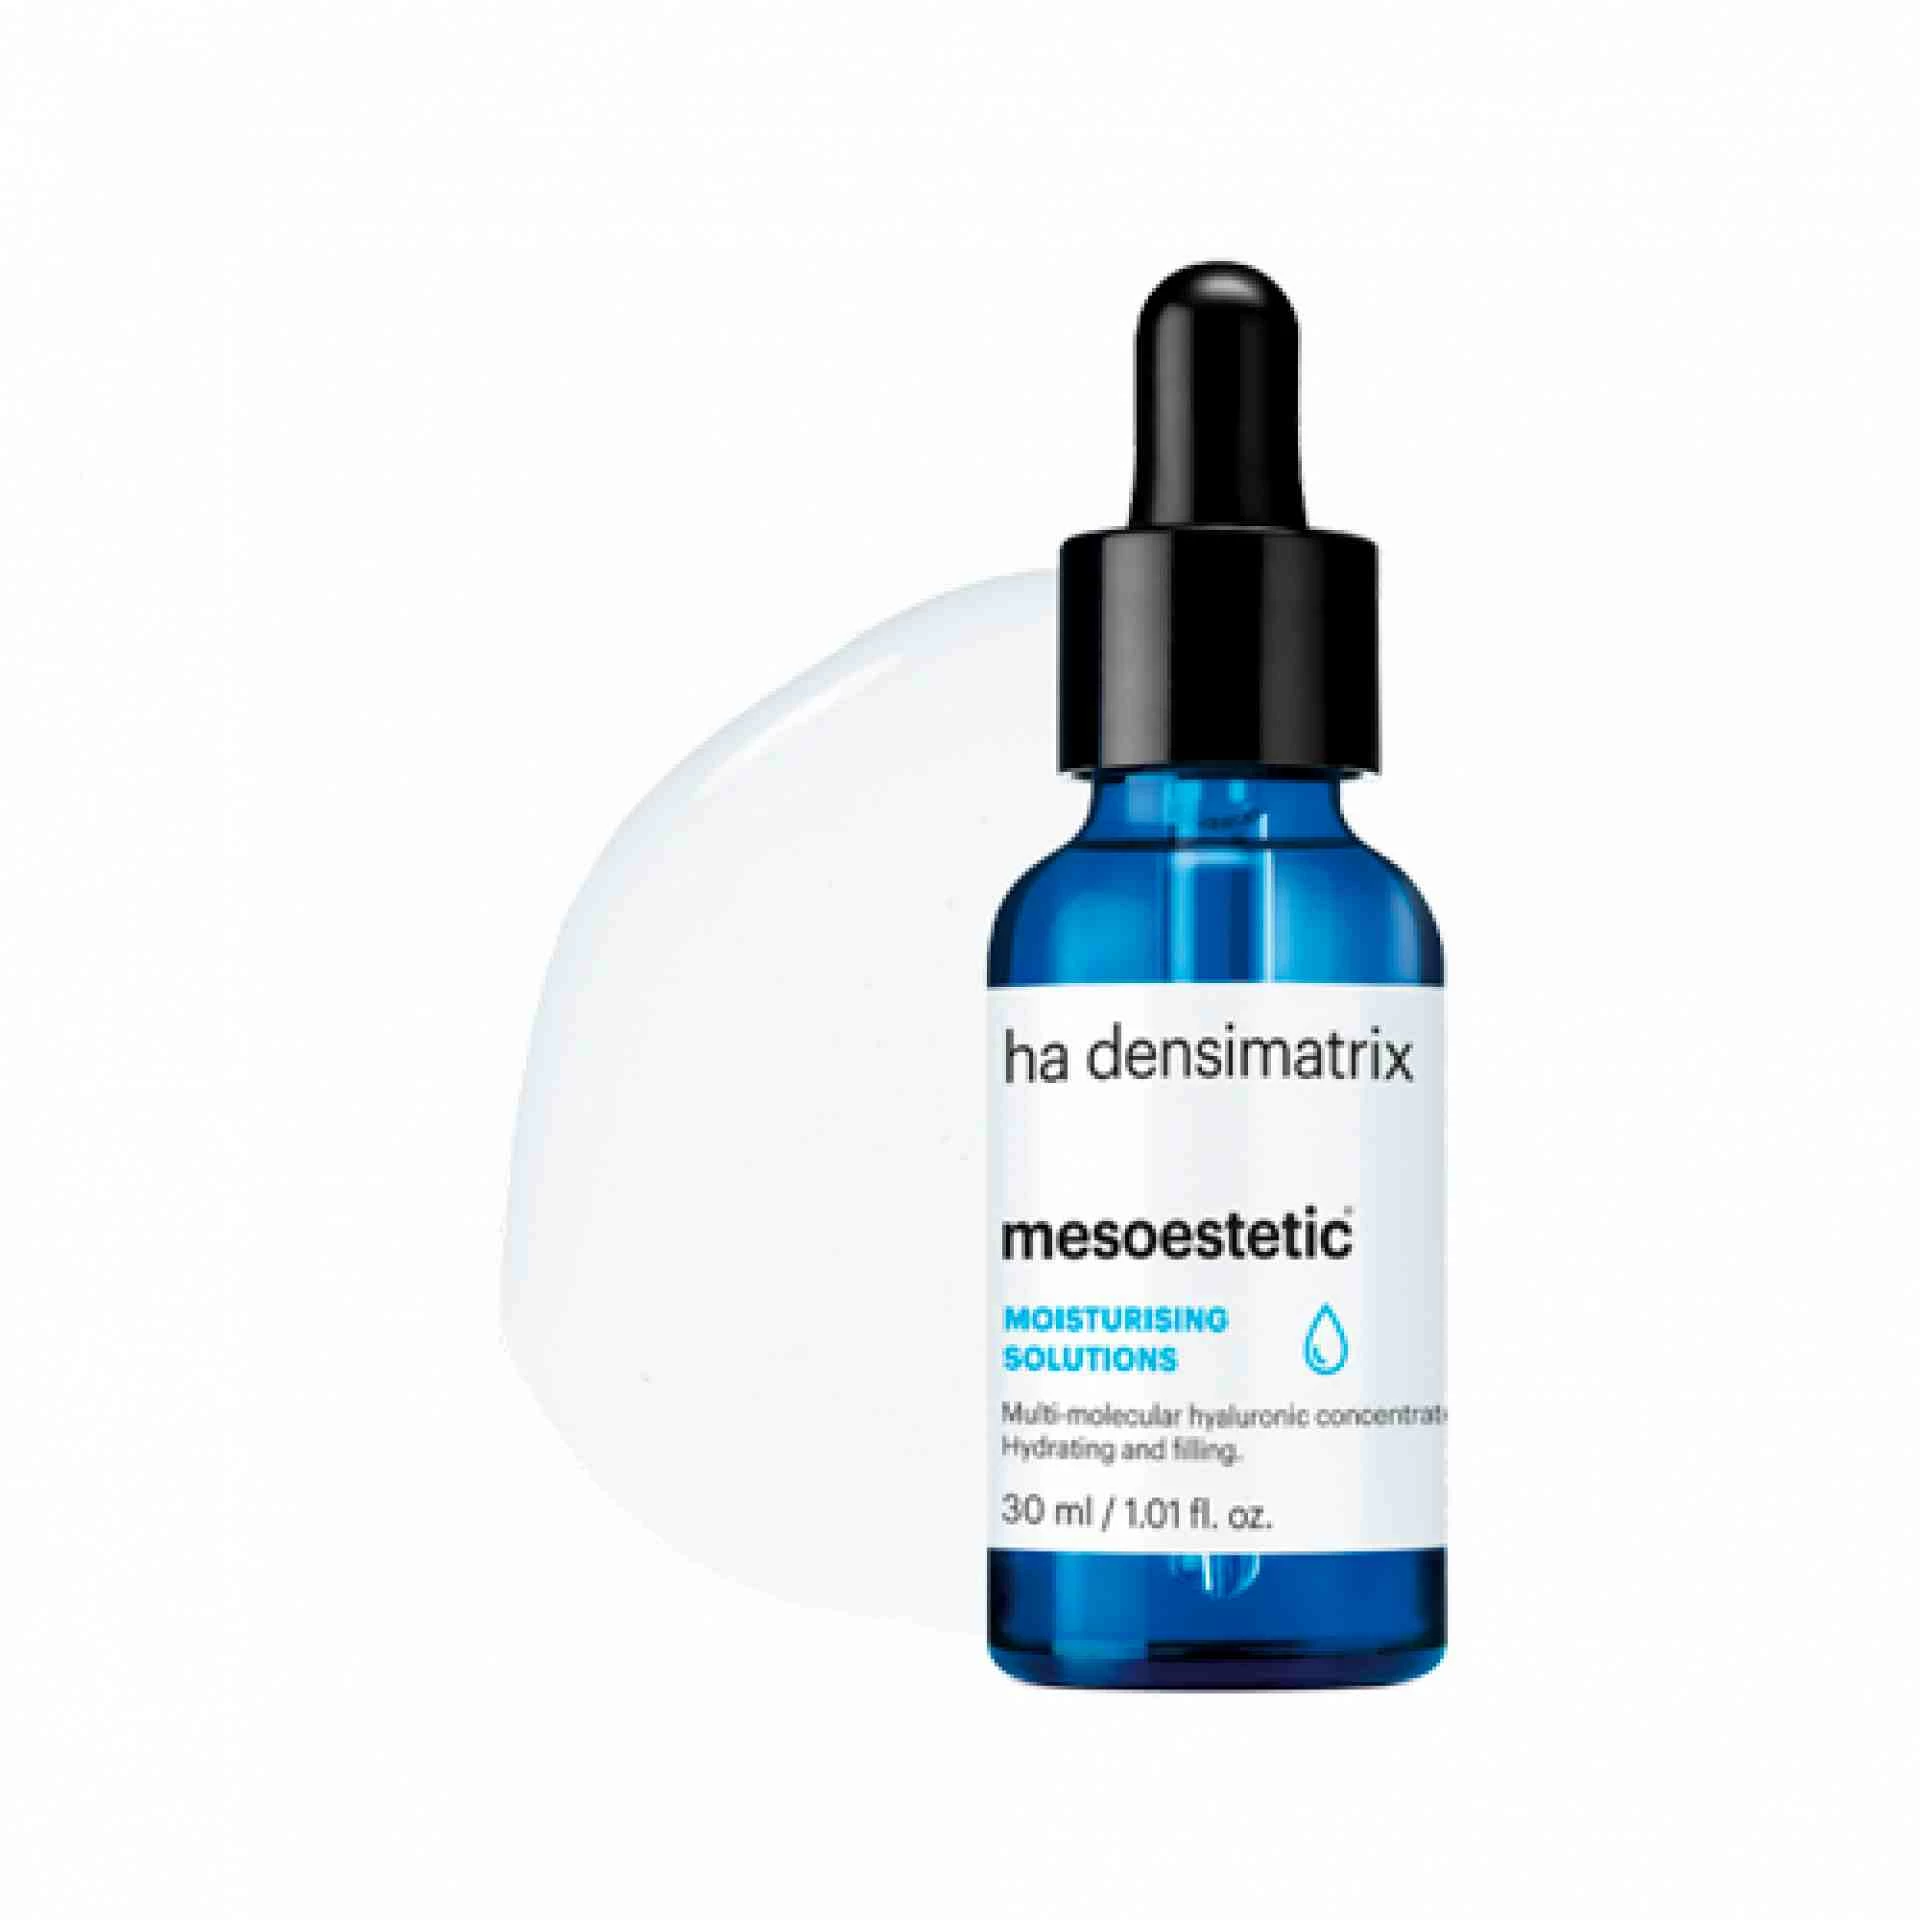 Ha Densimatrix | Concentrado hidratante 30ml - Moisturising Solutions - Mesoestetic ®